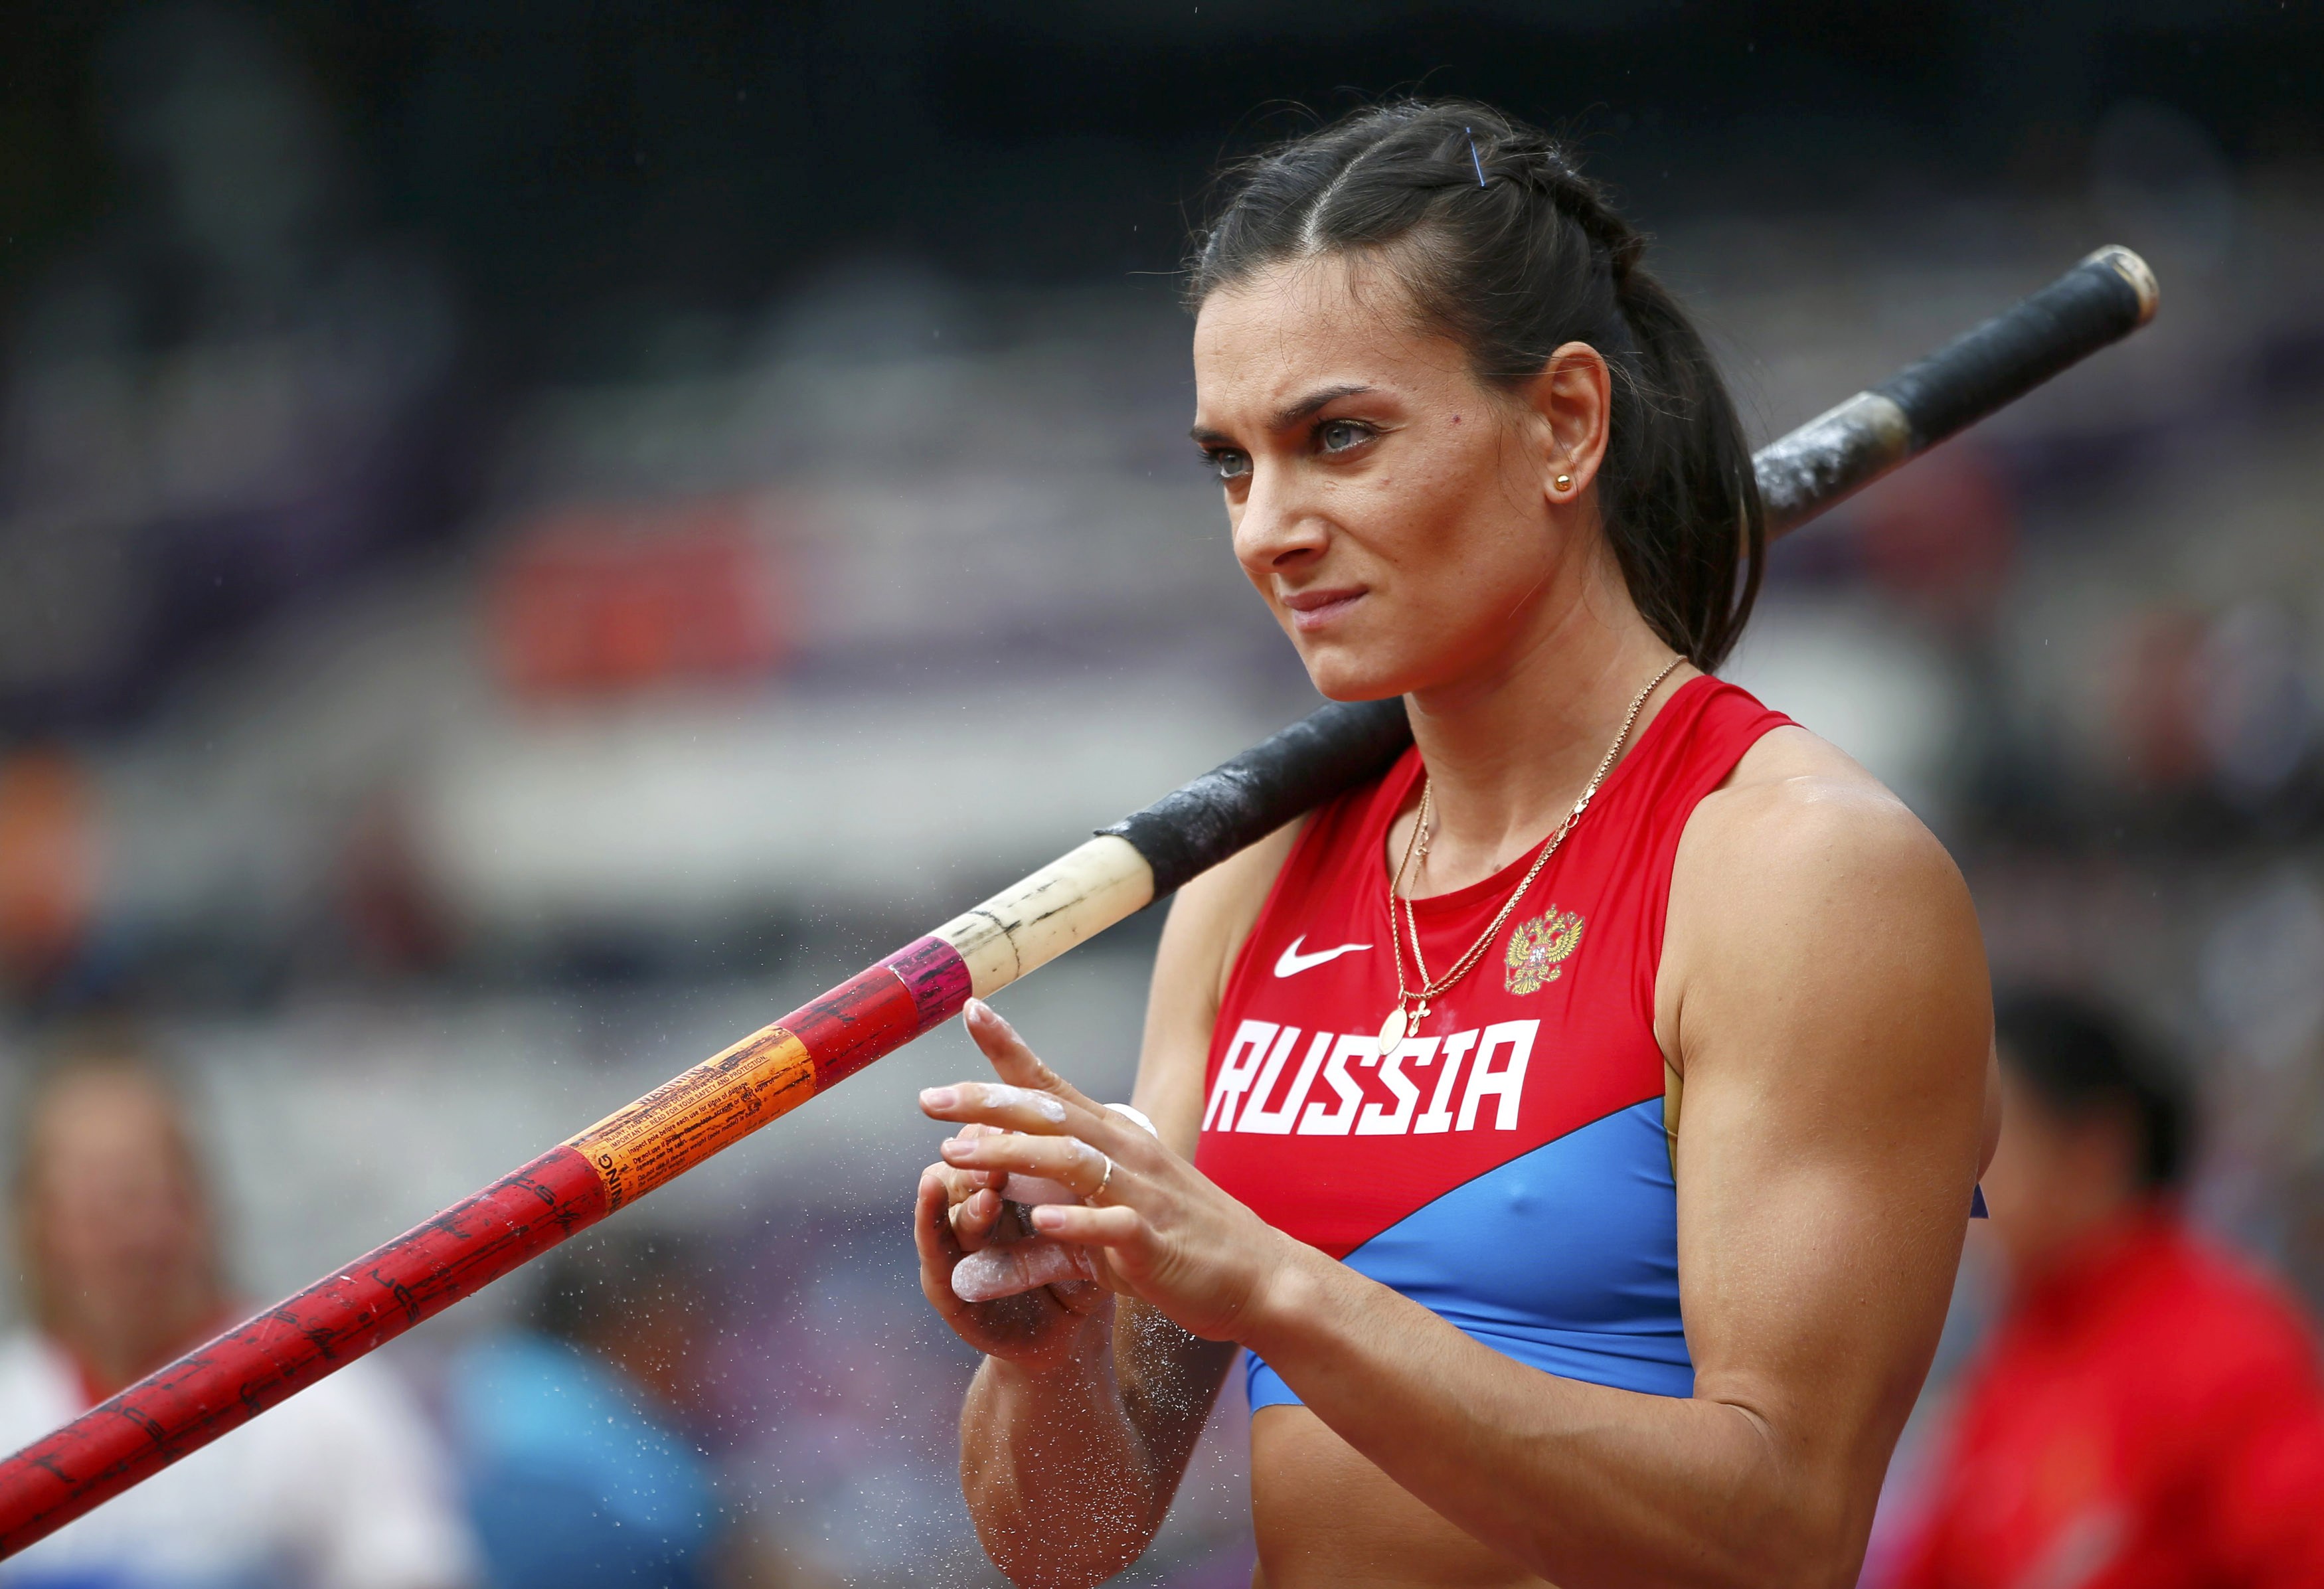 Yelena Isinbayeva preparing for the start